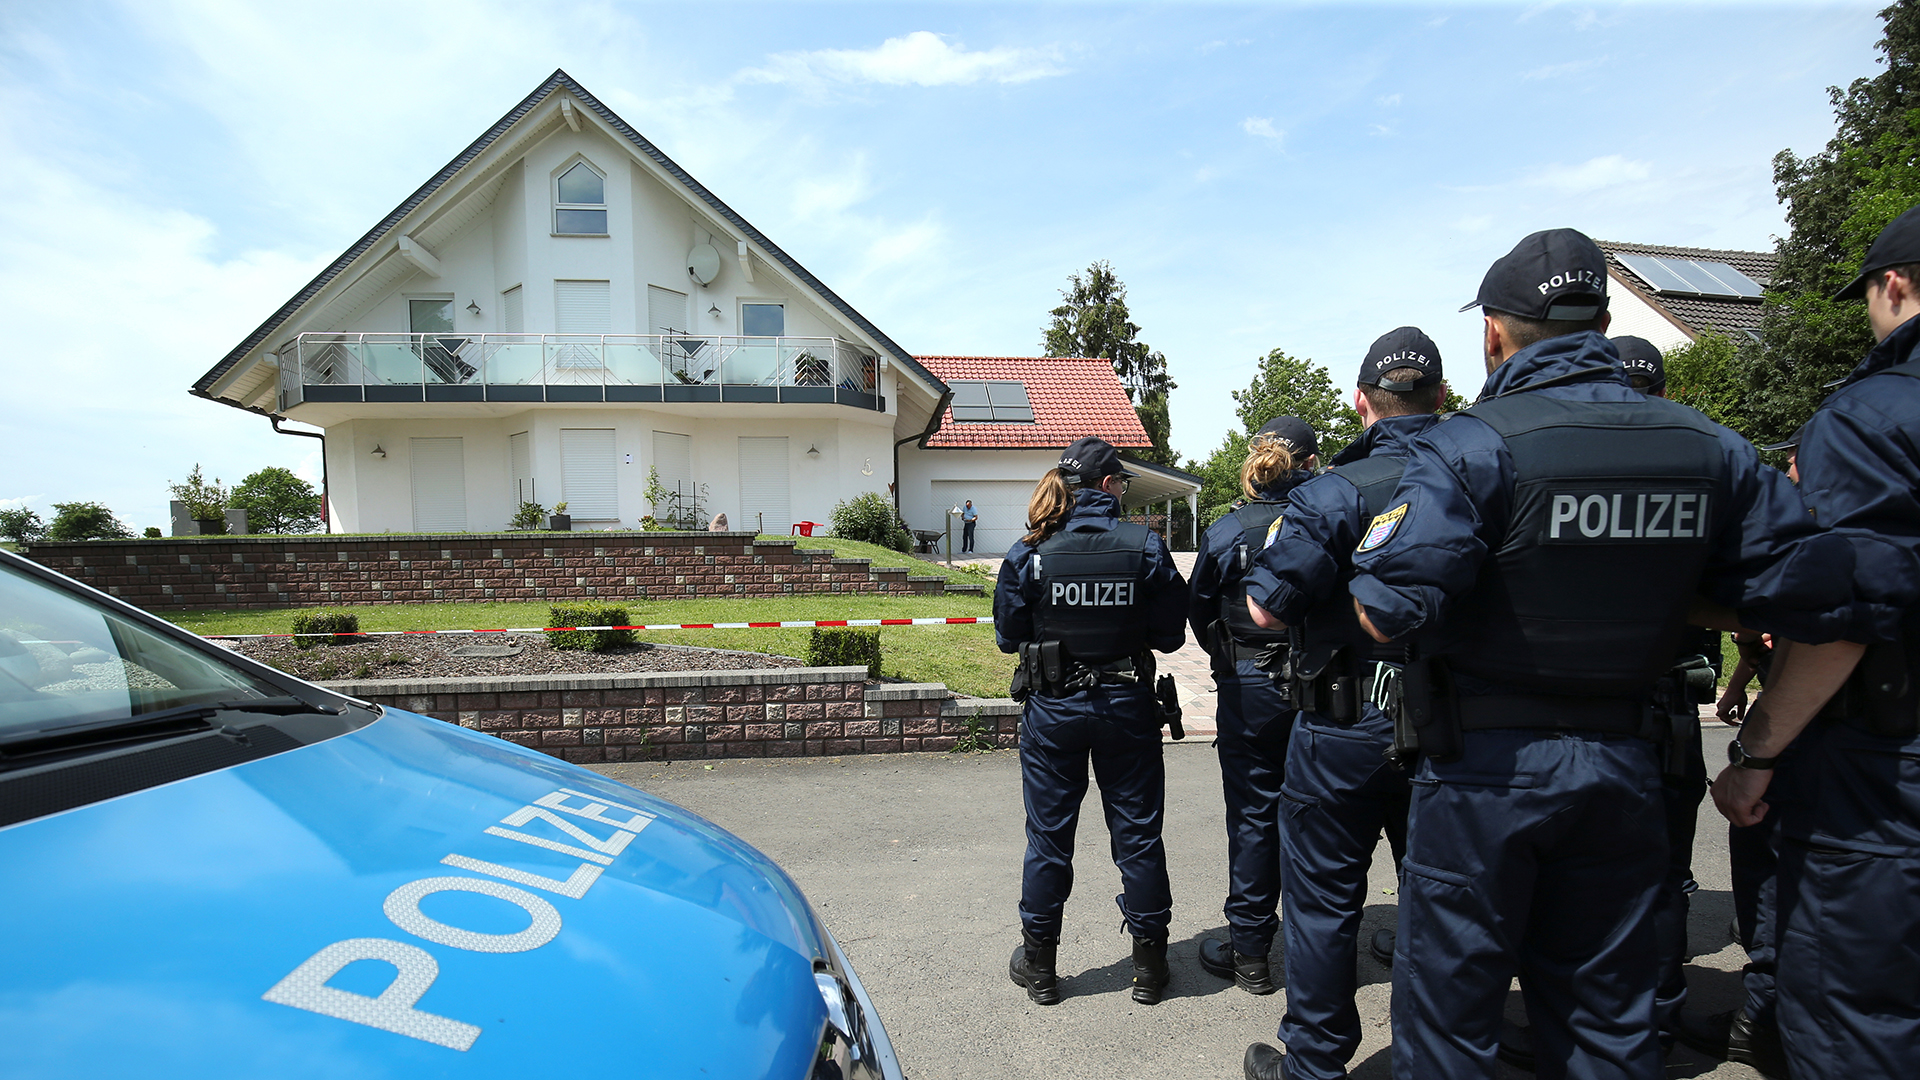 Polizisten stehen vor dem Haus des ermordeten Walter Lübcke. | Bildquelle: REUTERS